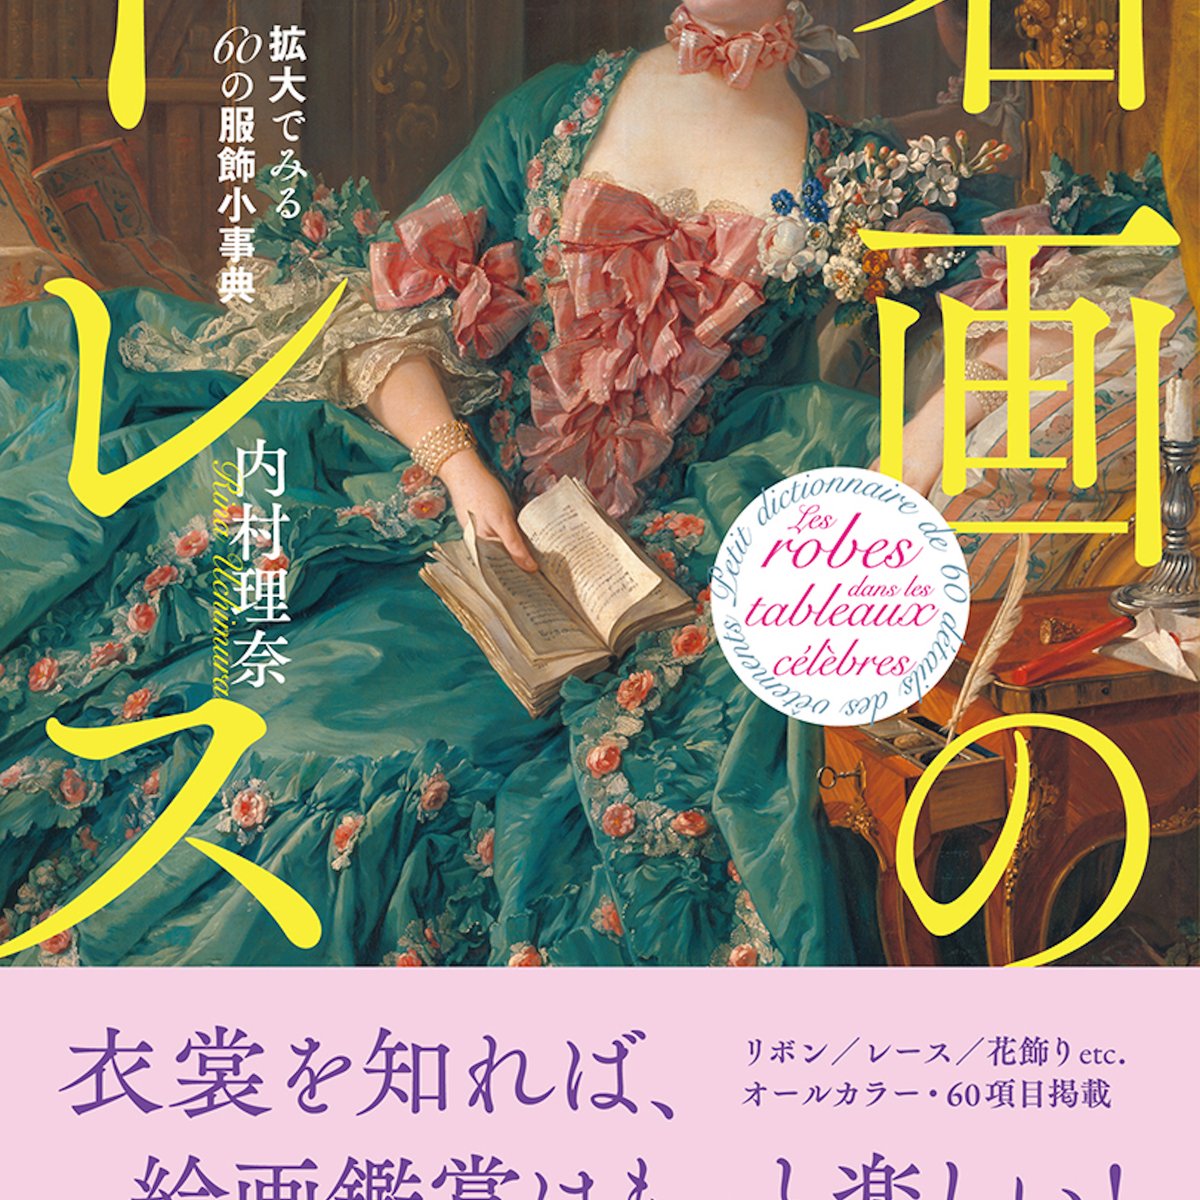 姫君の服飾史をたどる図鑑「名画のドレス 拡大でみる60の服飾小事典